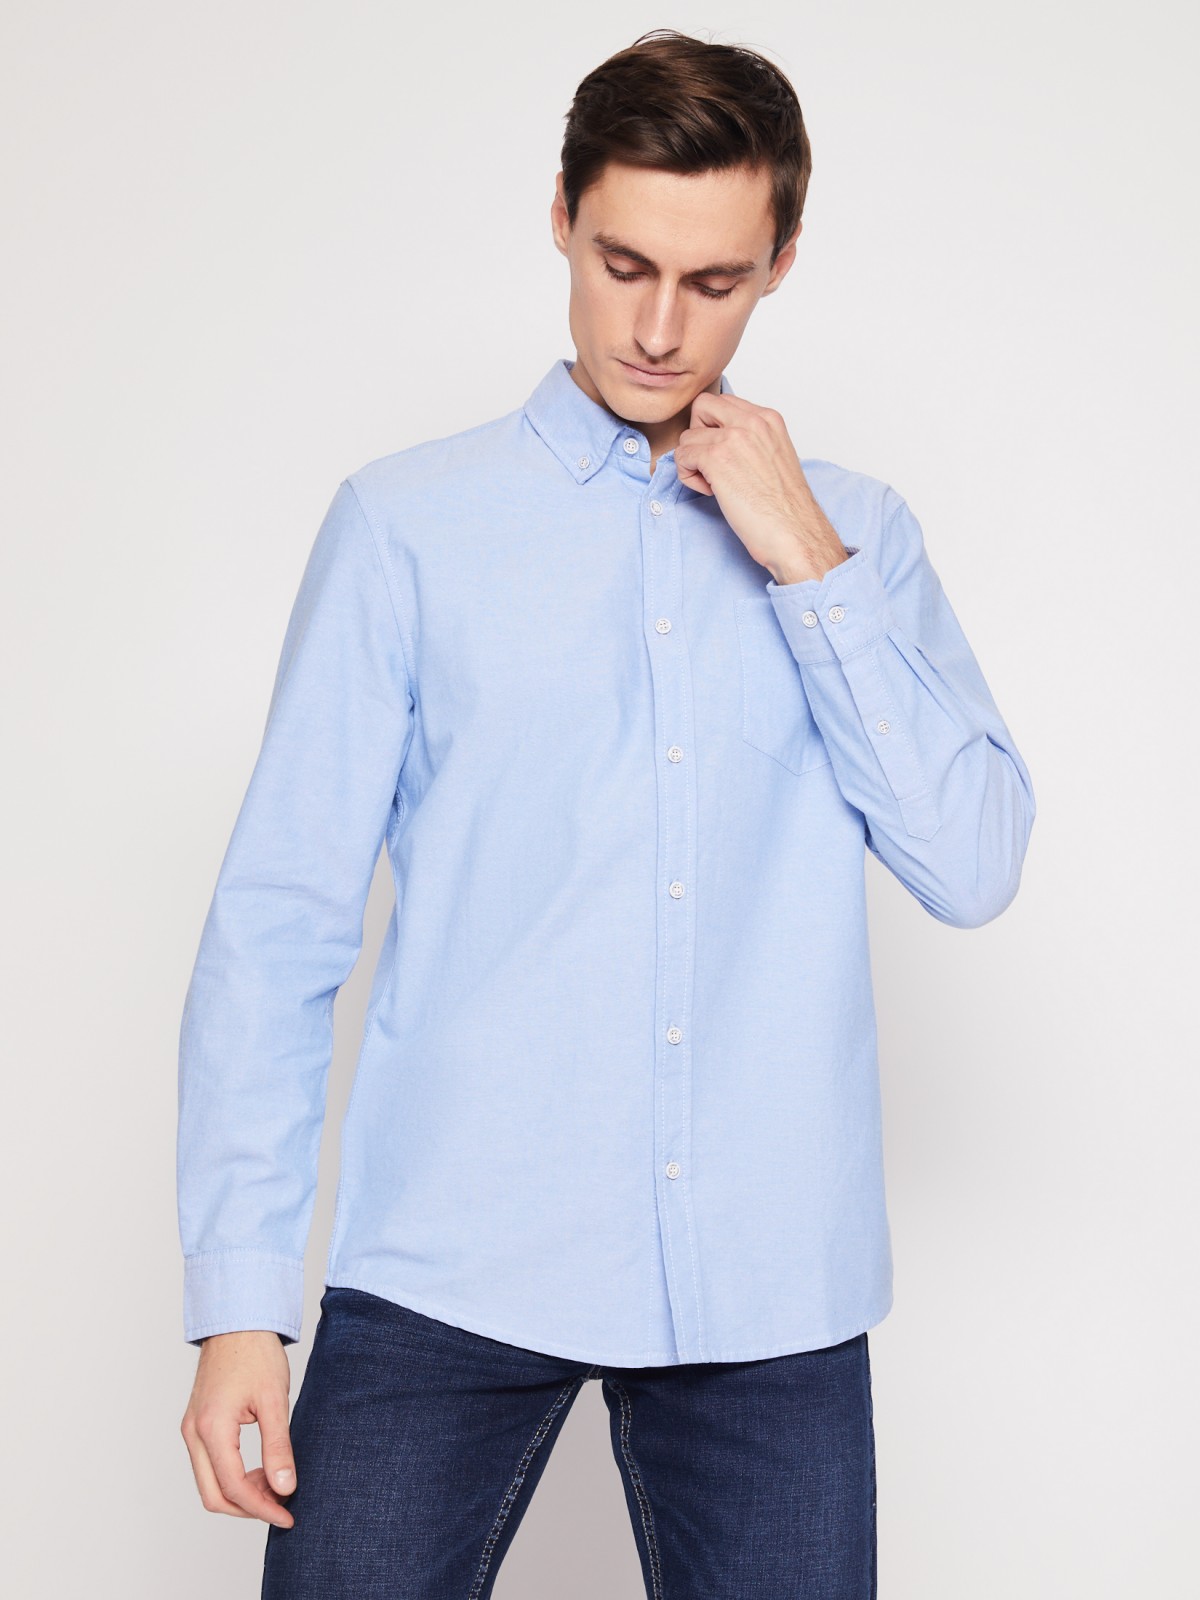 Хлопковая рубашка с длинным рукавом zolla 012122191013, цвет светло-голубой, размер M - фото 4